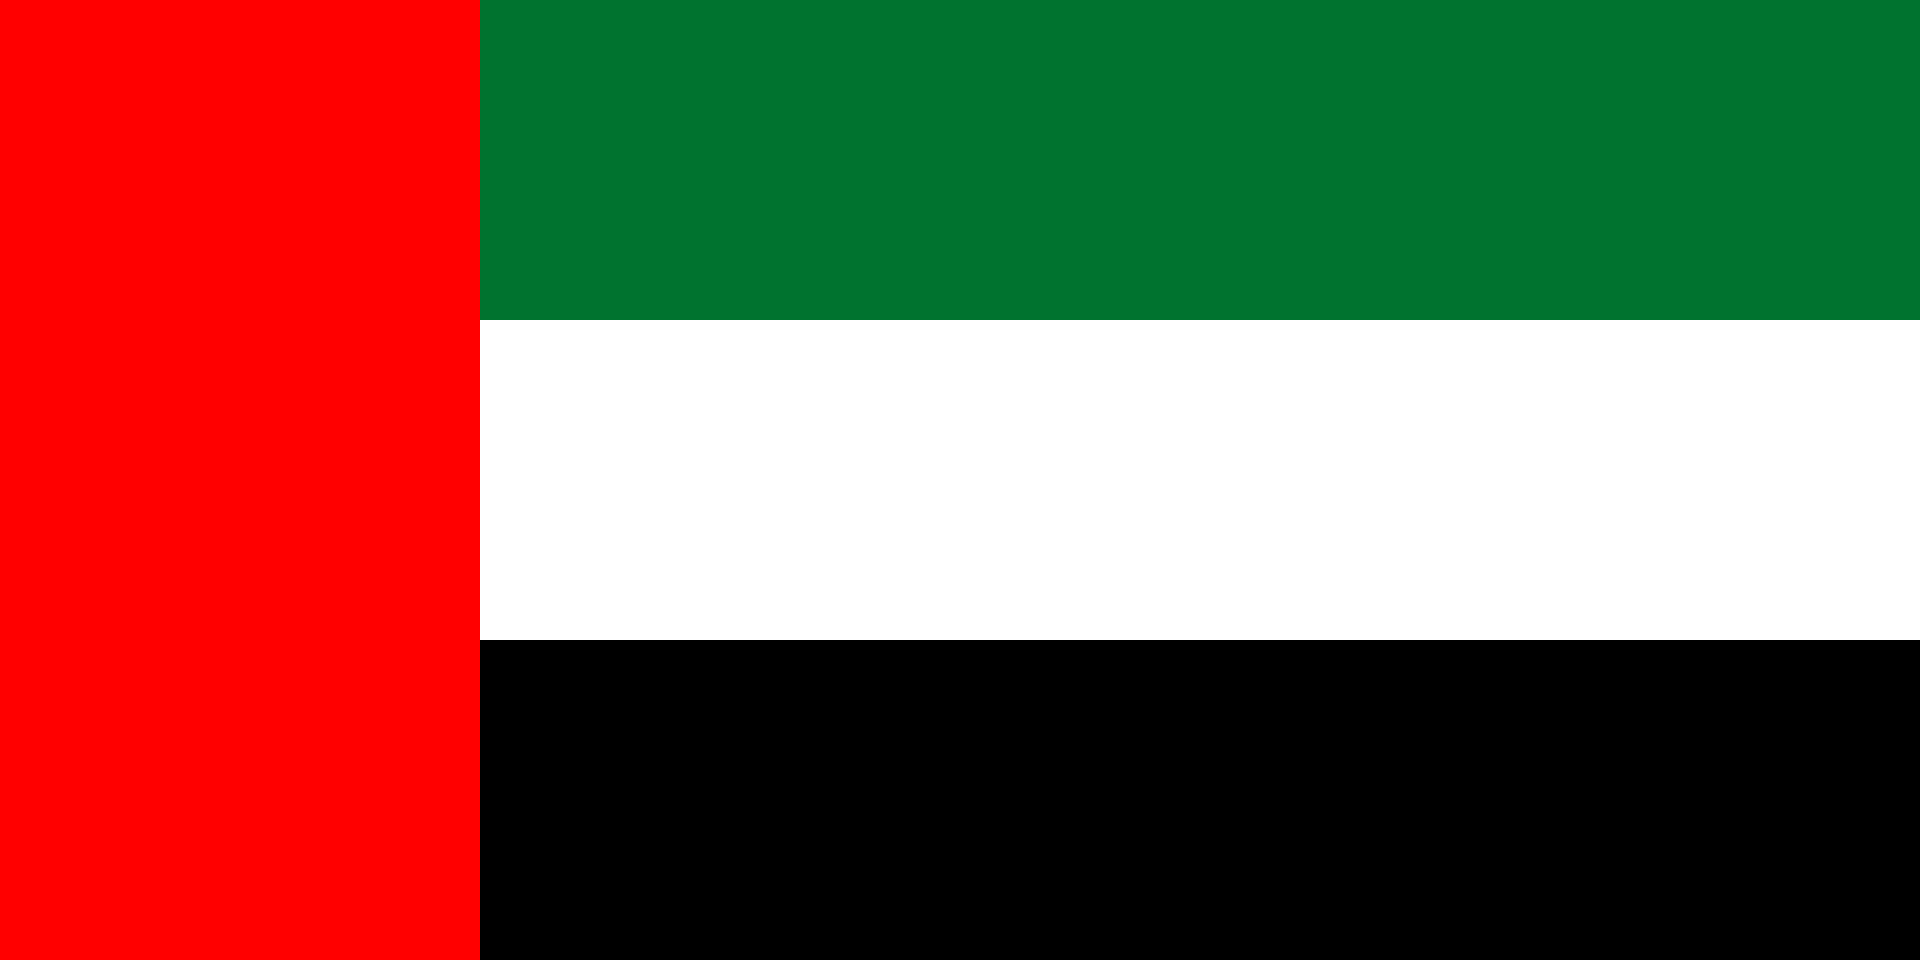 UAE Flag 6ft x 3ft